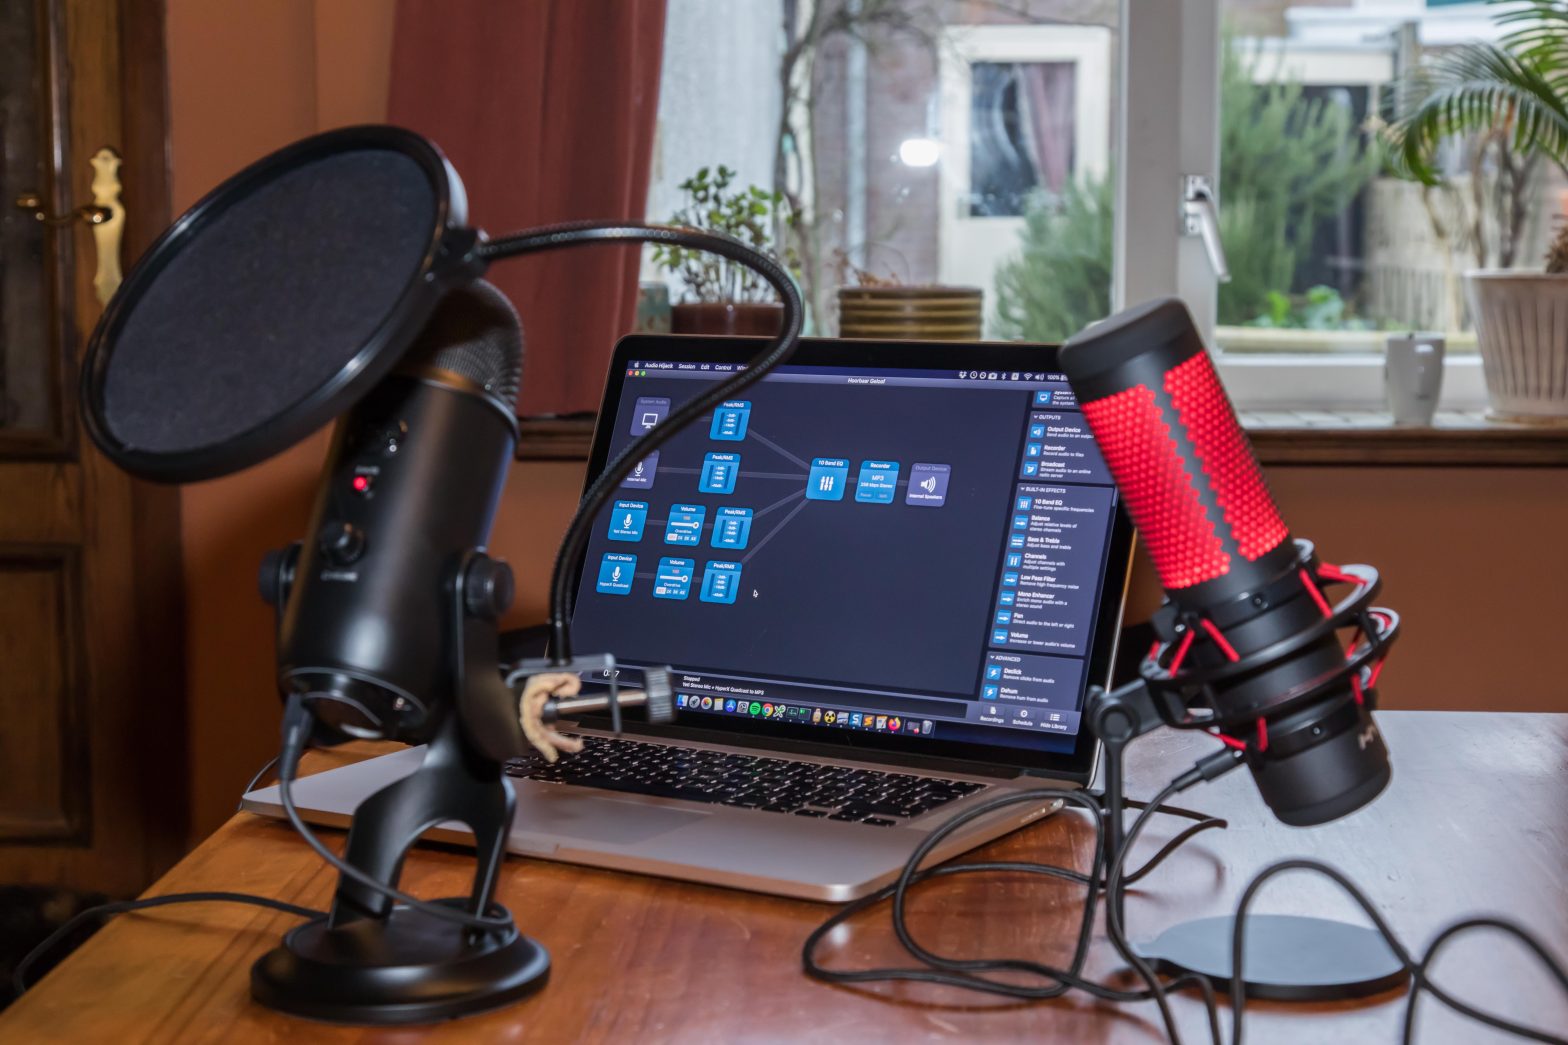 Twee studiomicrofoons op een tafel, met daarachter een macbook met op het scherm opnamesoftware.